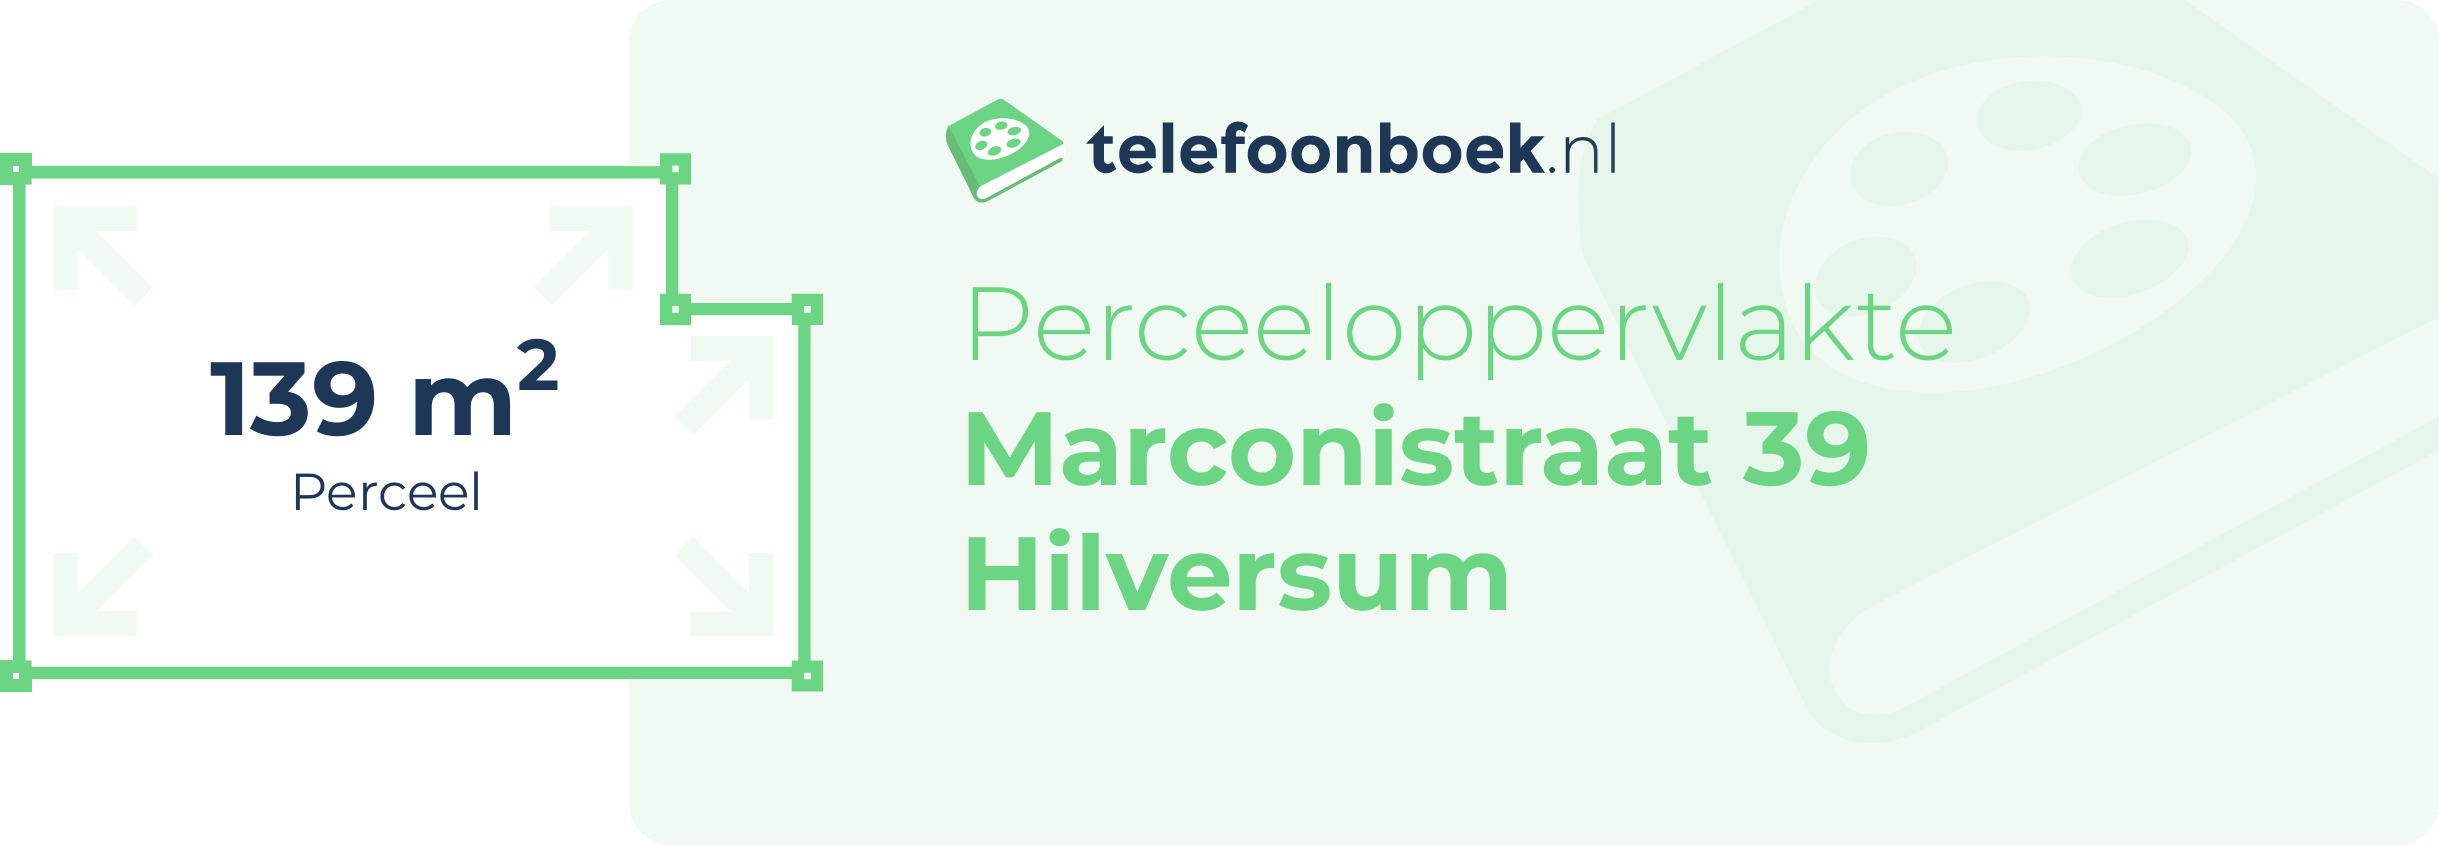 Perceeloppervlakte Marconistraat 39 Hilversum